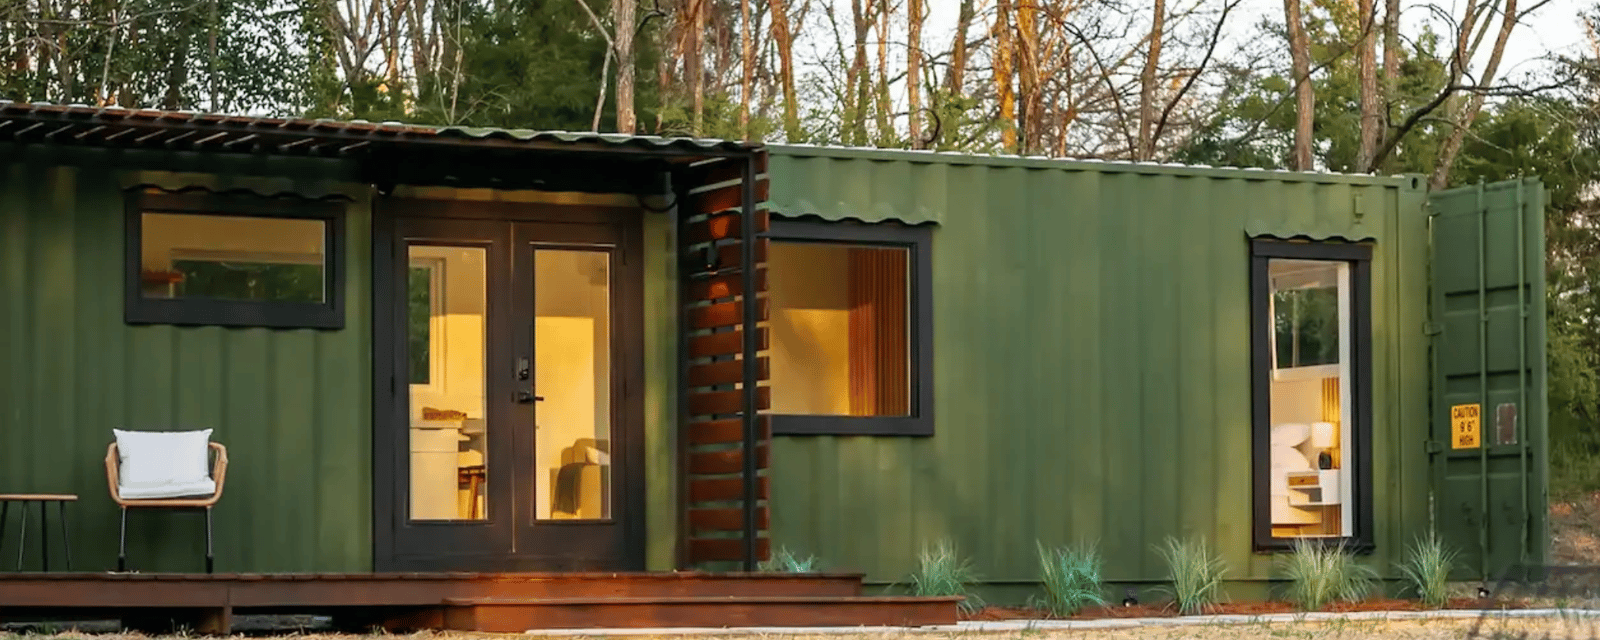 Magnifique petite mini-maison construite avec des matériaux inusités